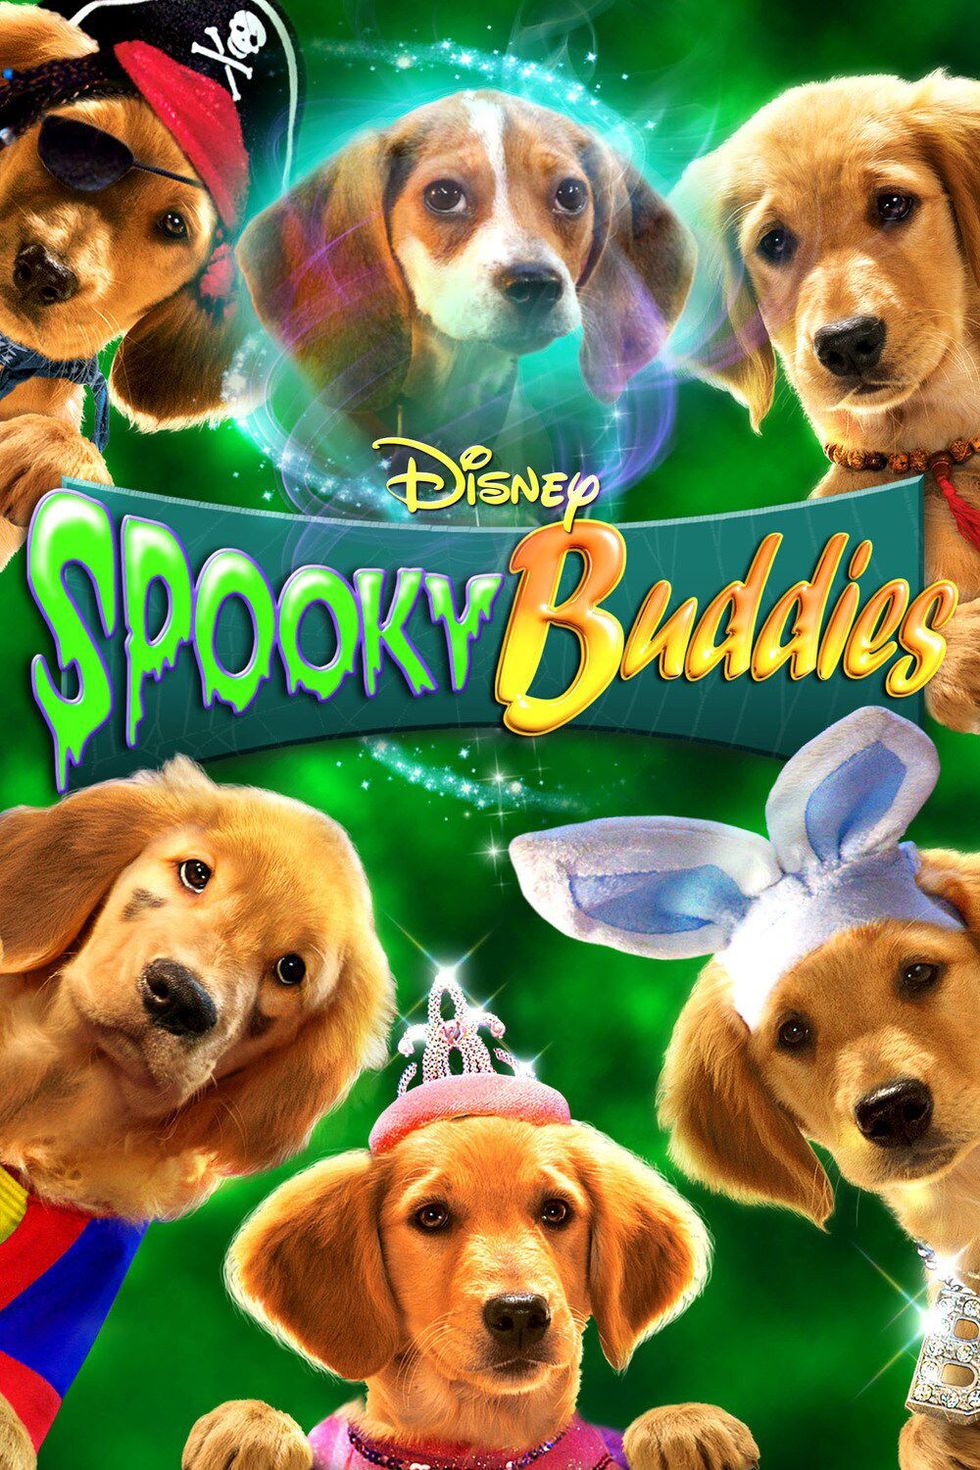 Spooky Buddies